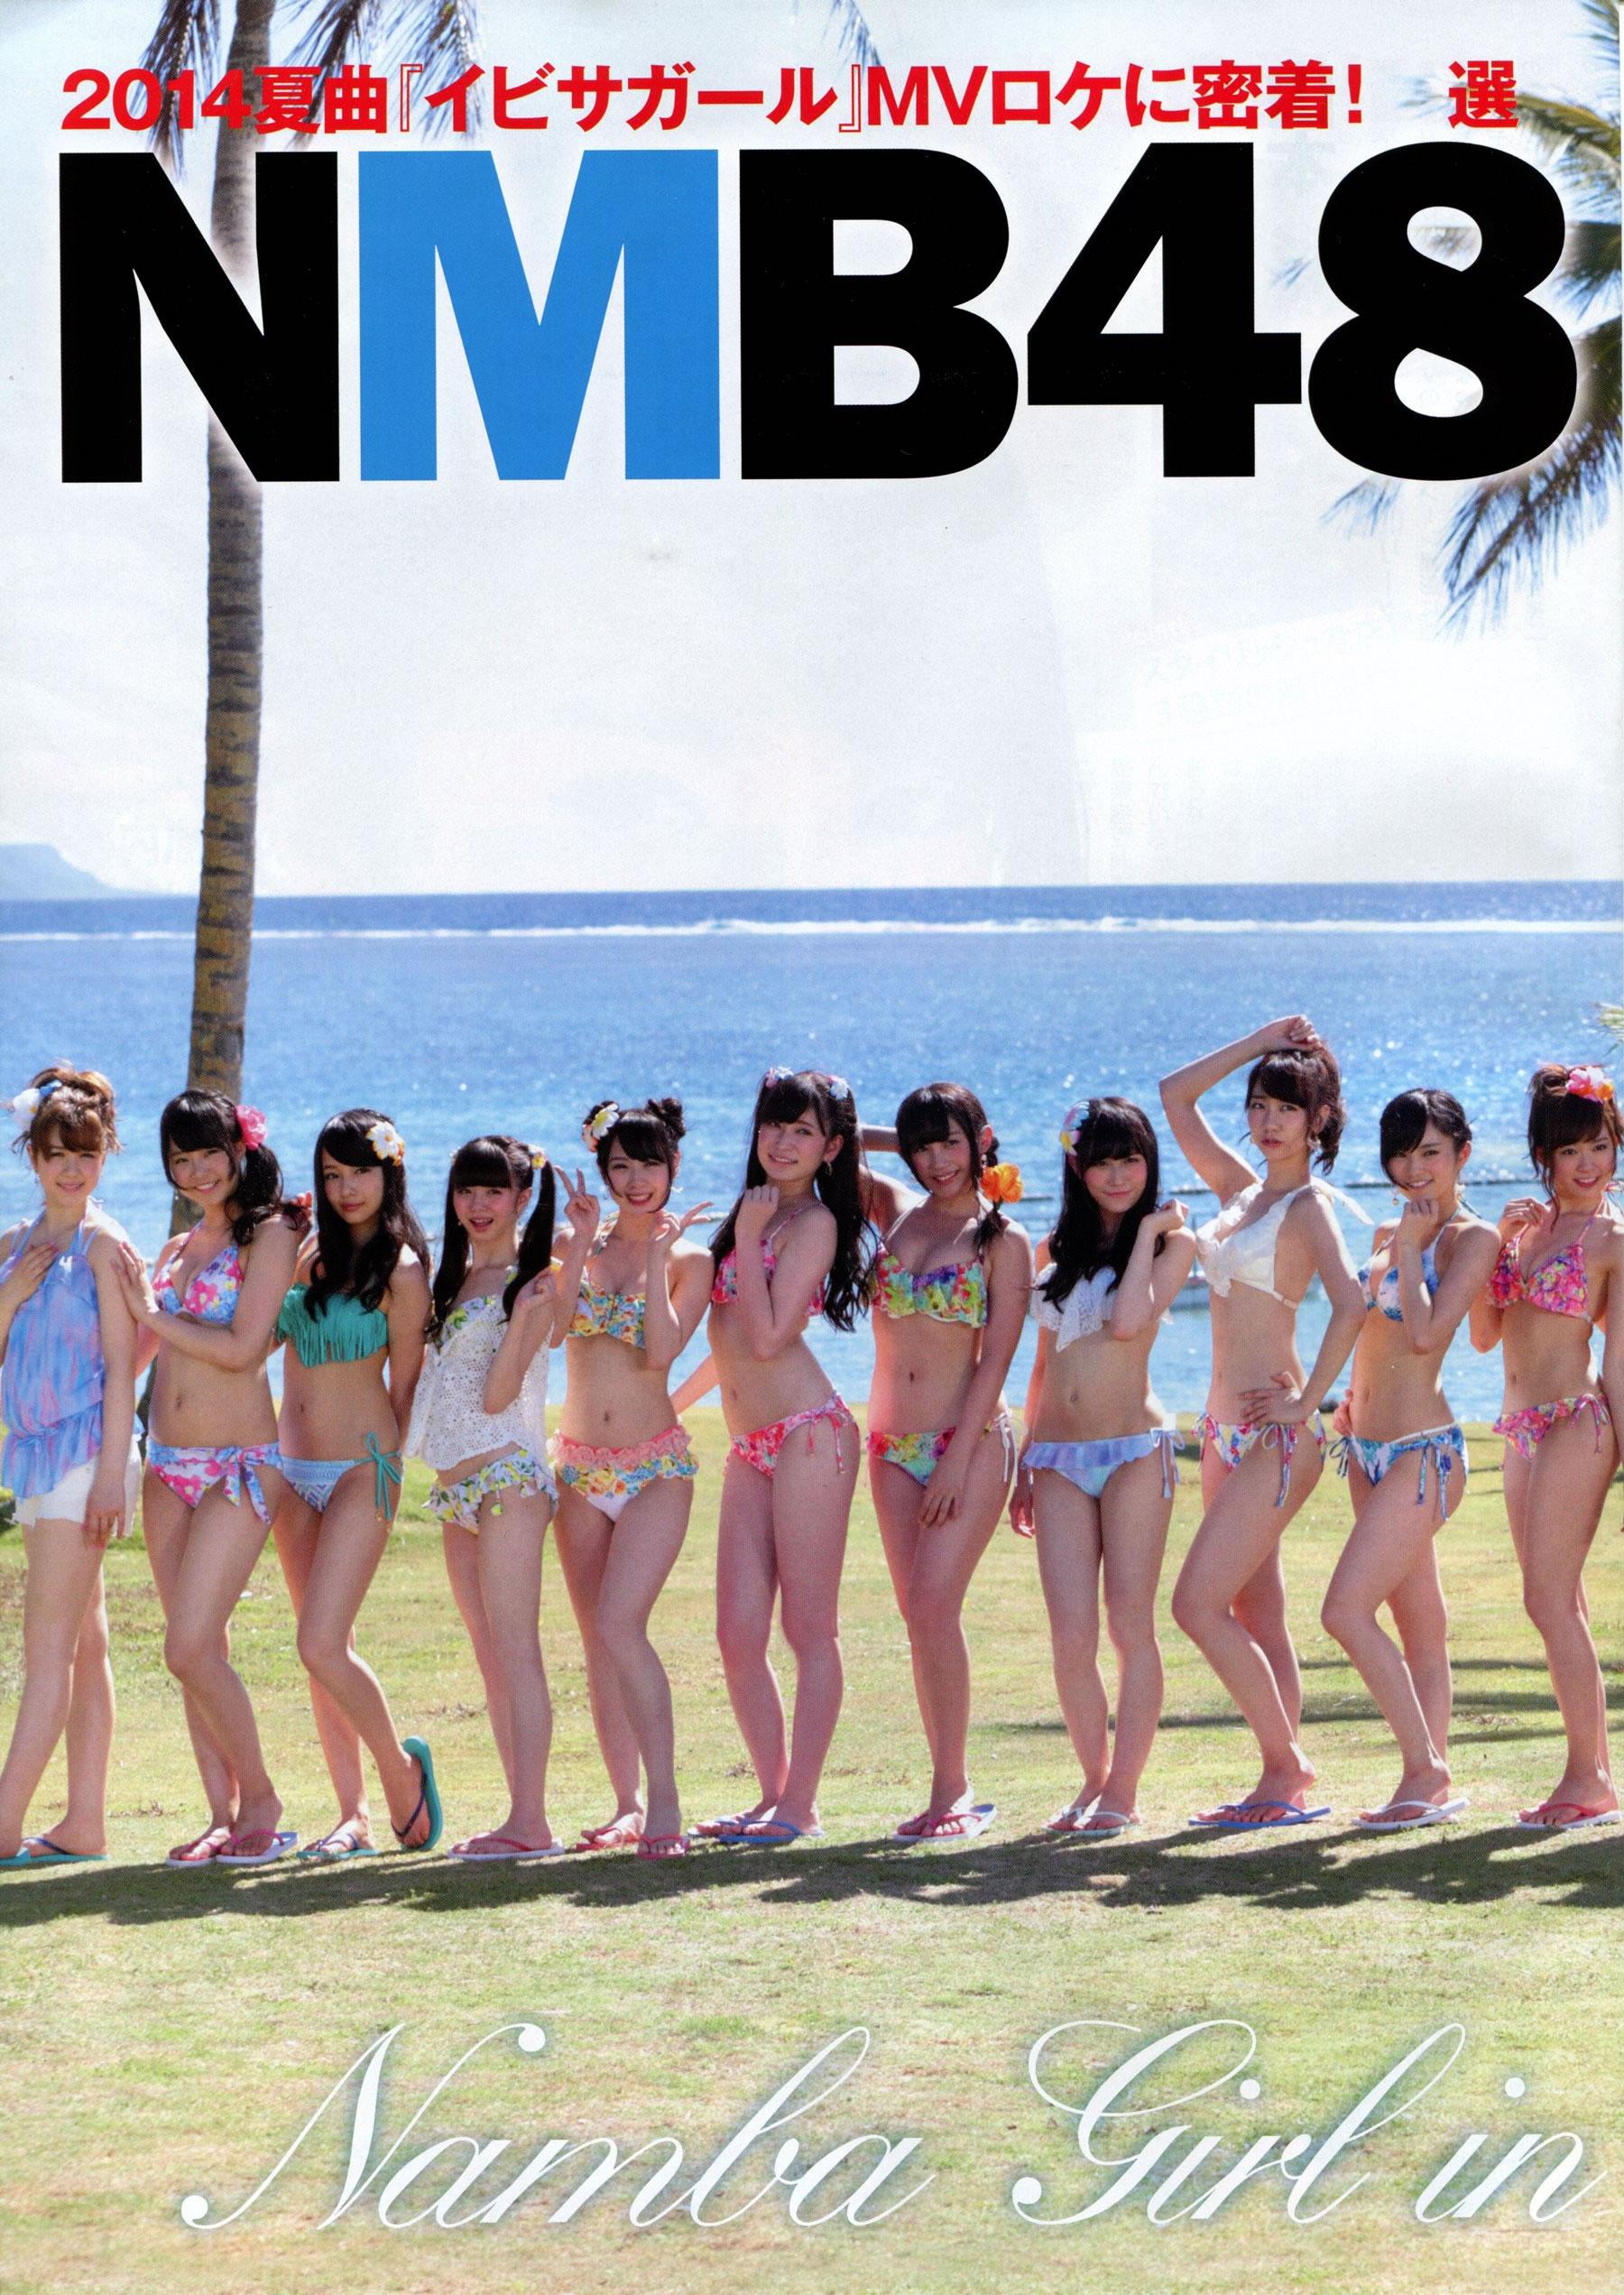 日本偶像女子团体NMB48 乃木坂46 AKB48 SKE48写真集合大放送,日本偶像女子团体NMB48 乃木坂46 AKB48 SKE48写真集合大放送